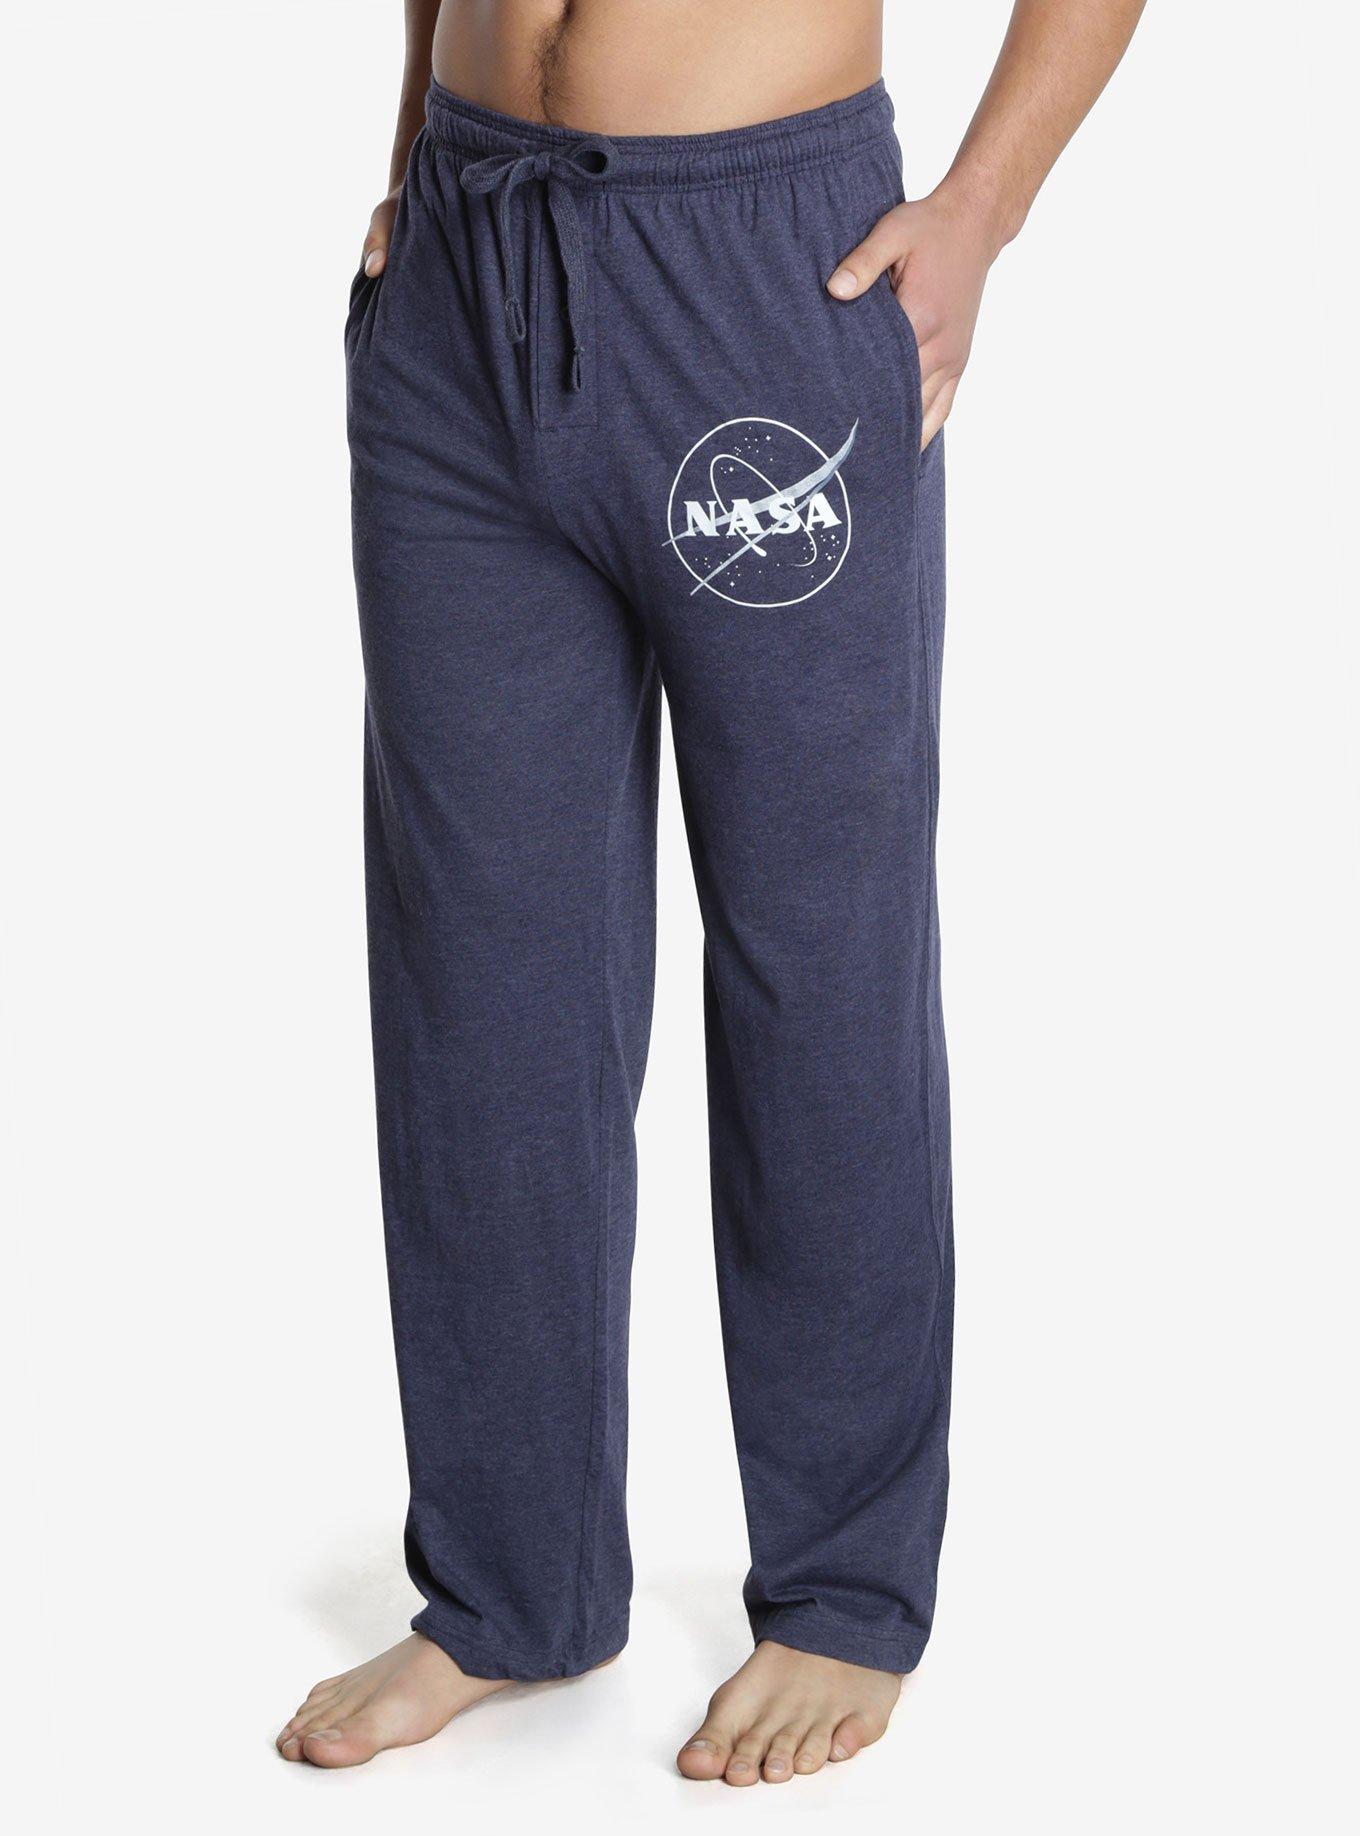 NASA Logo Pajama Pants | BoxLunch